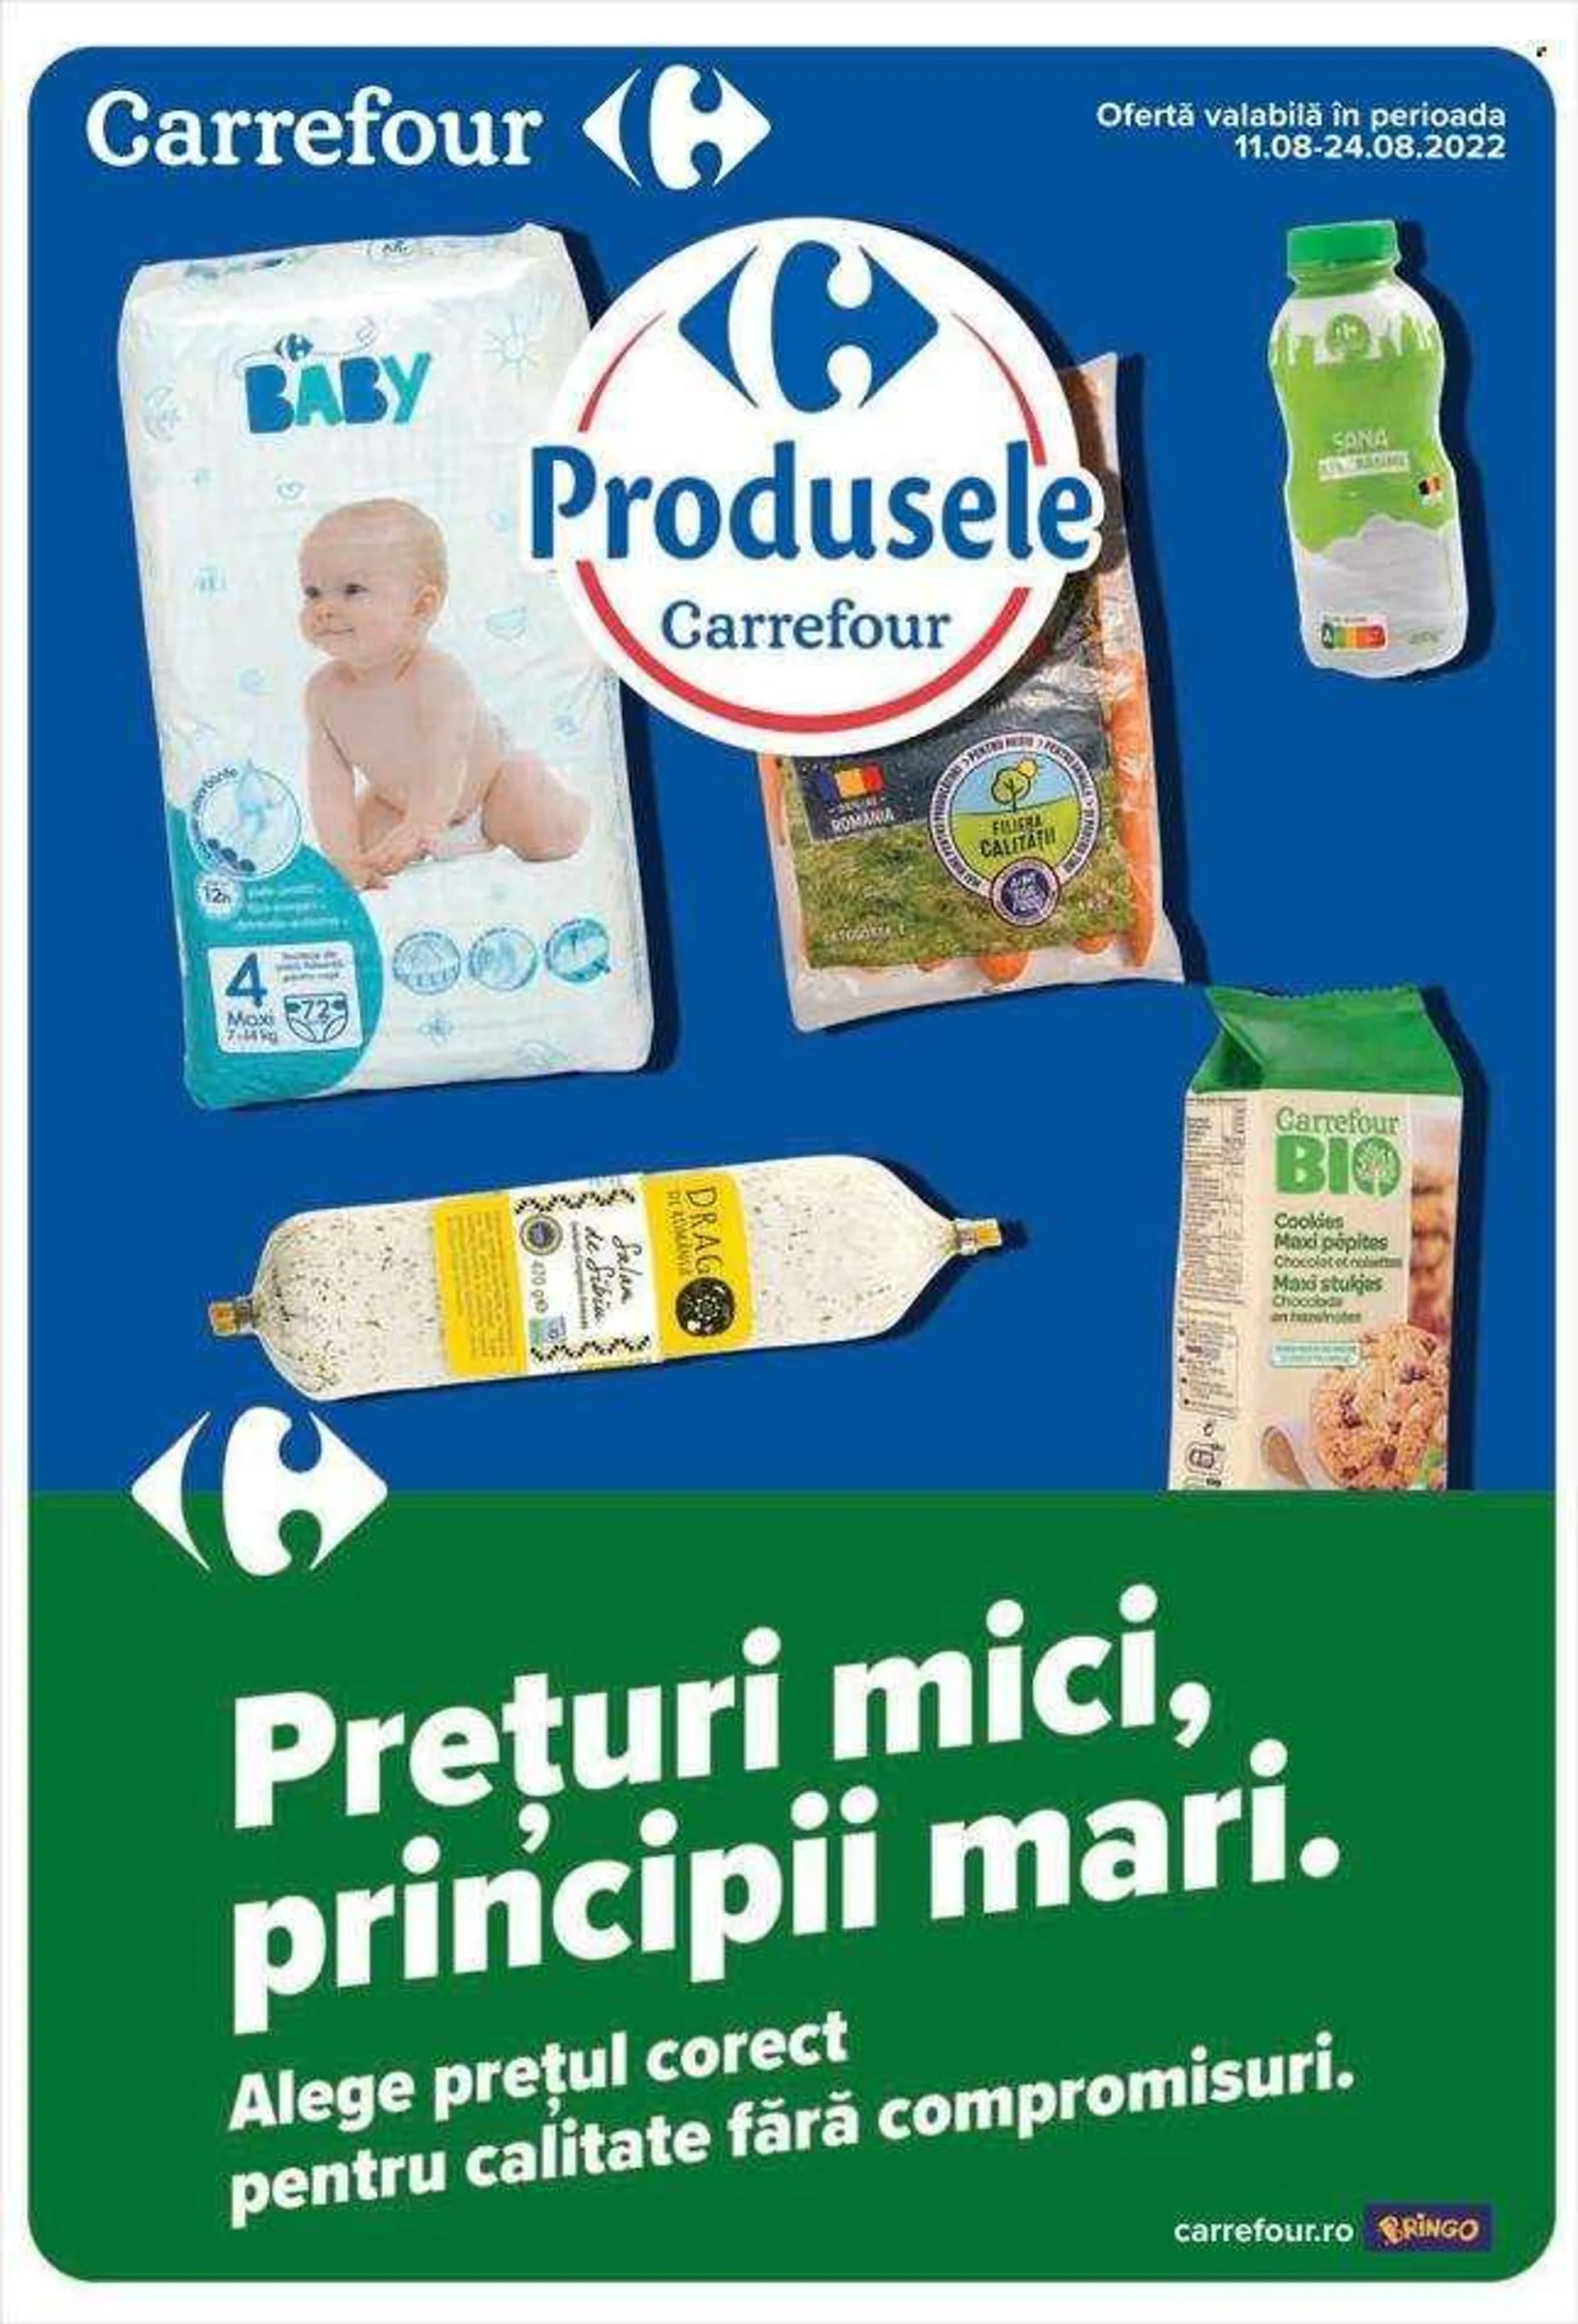 Cataloage Carrefour - 11.08.2022 - 24.08.2022 - Produse în vânzare - Sana, cookies. Pagina 1.